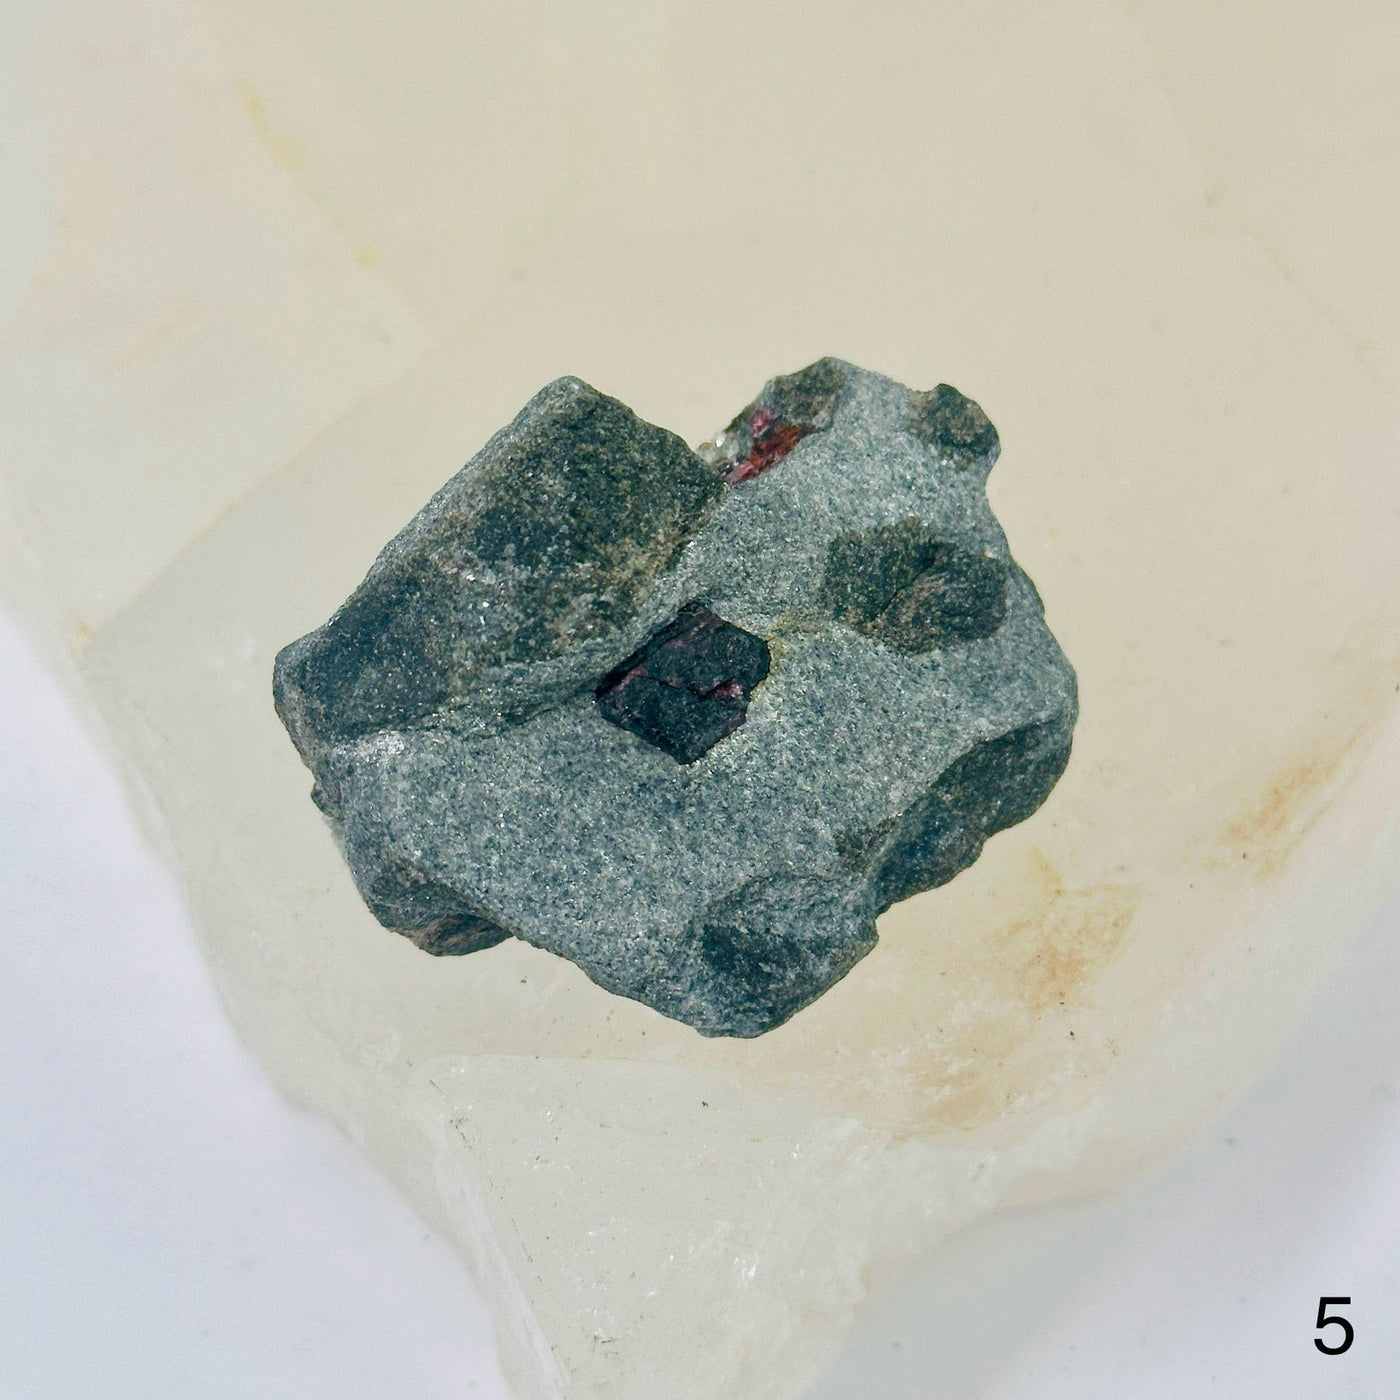  Garnet on Hematite Matrix - Natural Crystal - You Choose variant 5 labeled